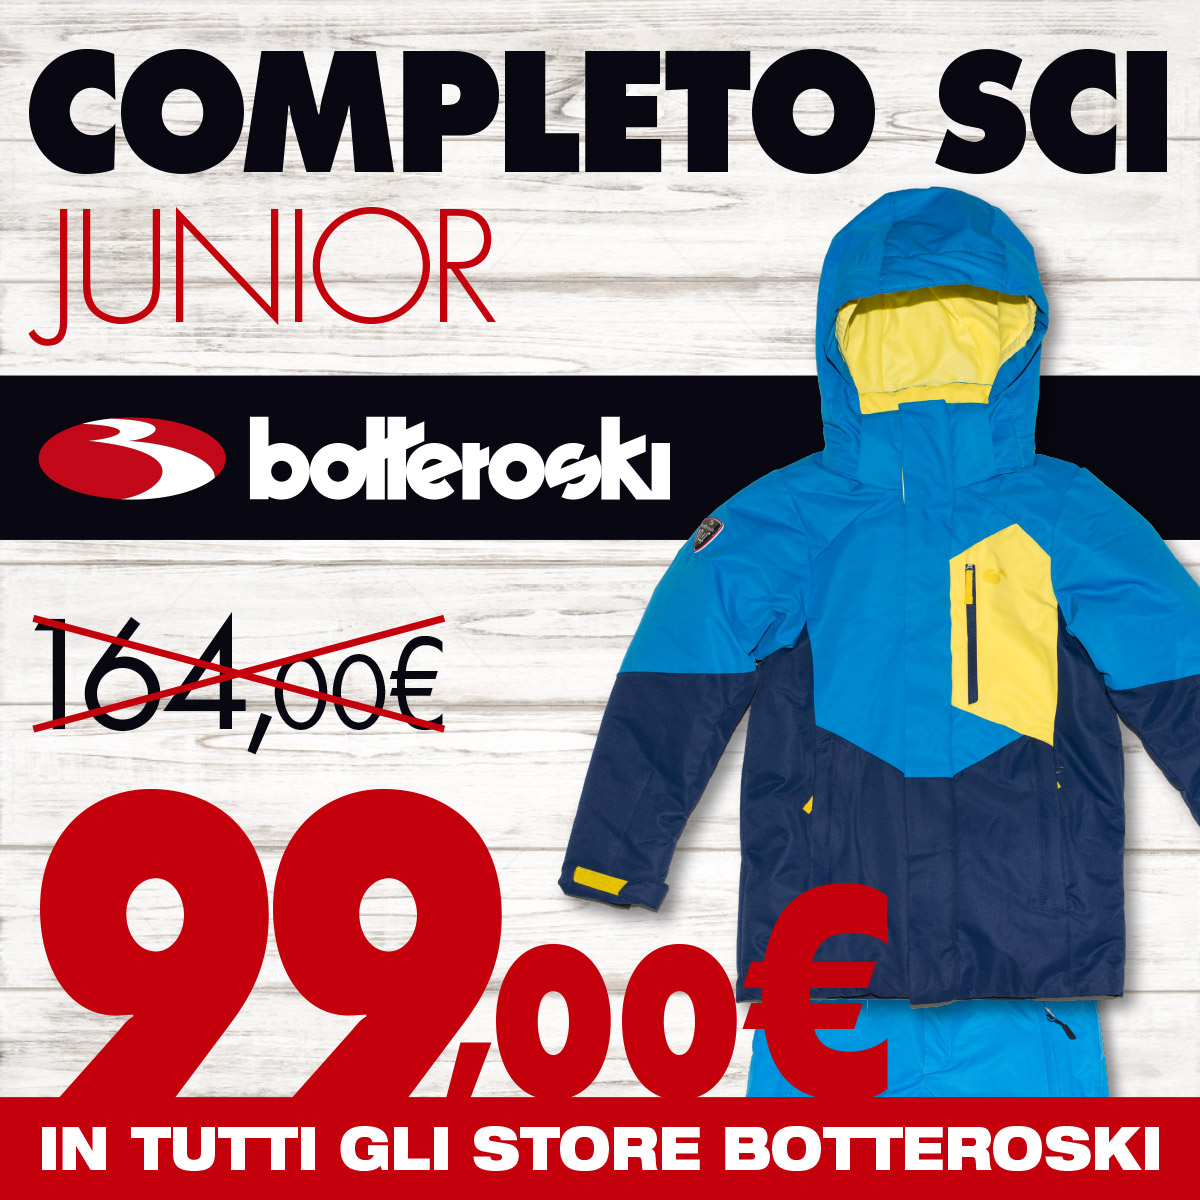 Promo completi sci Bottero Ski junior 99 euro